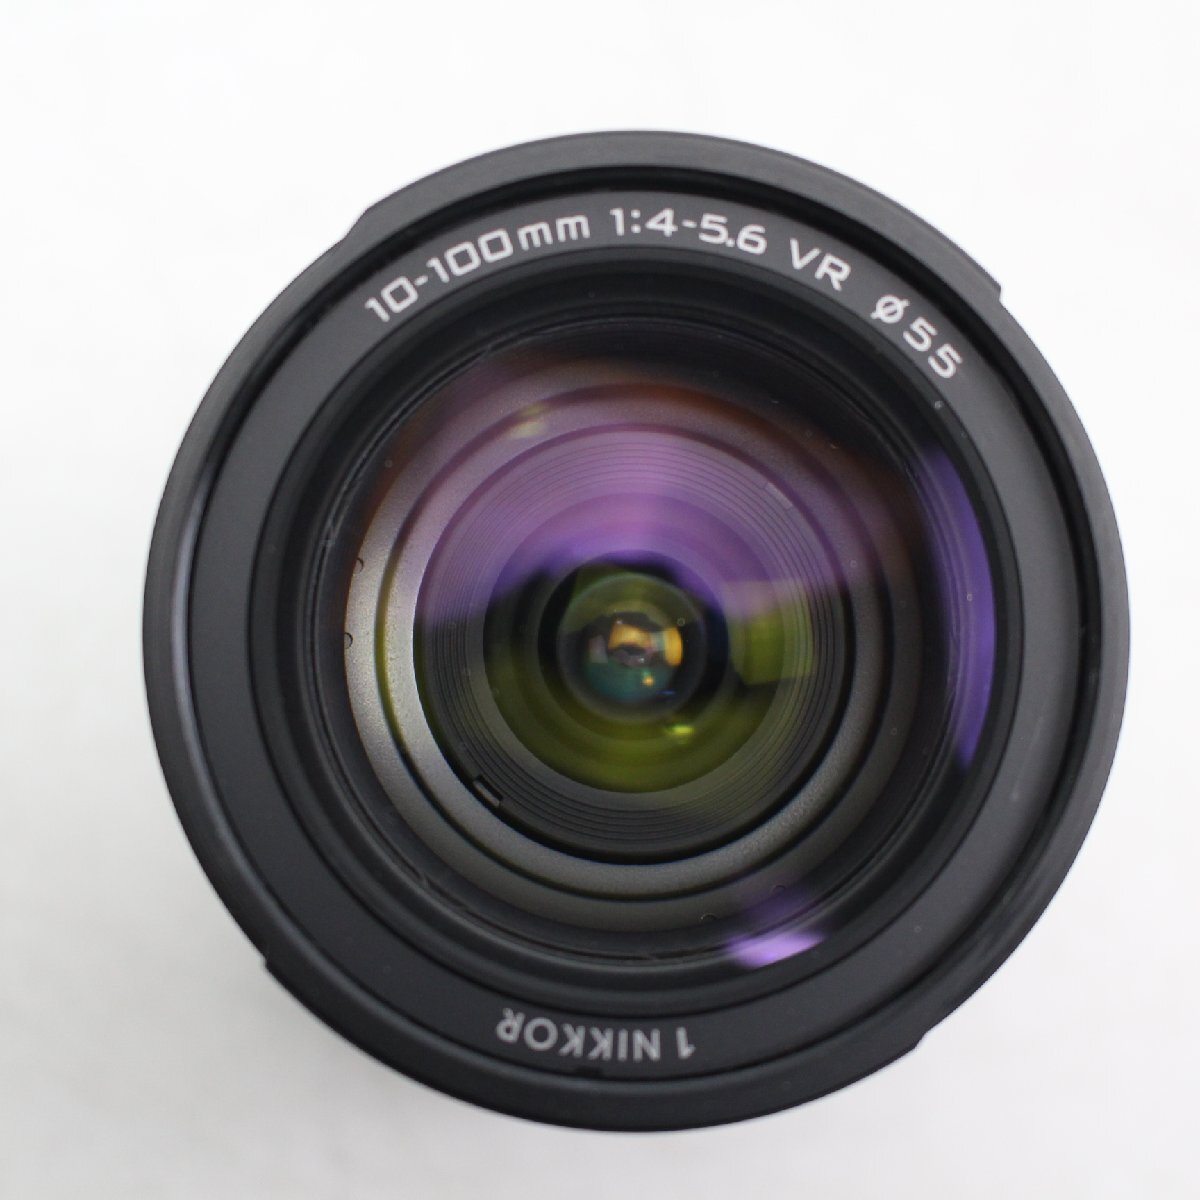 497)ニコン Nikon1 NIKKOR VR 10-100mm f/4-5.6 ブラック オートフォーカス レンズの画像2